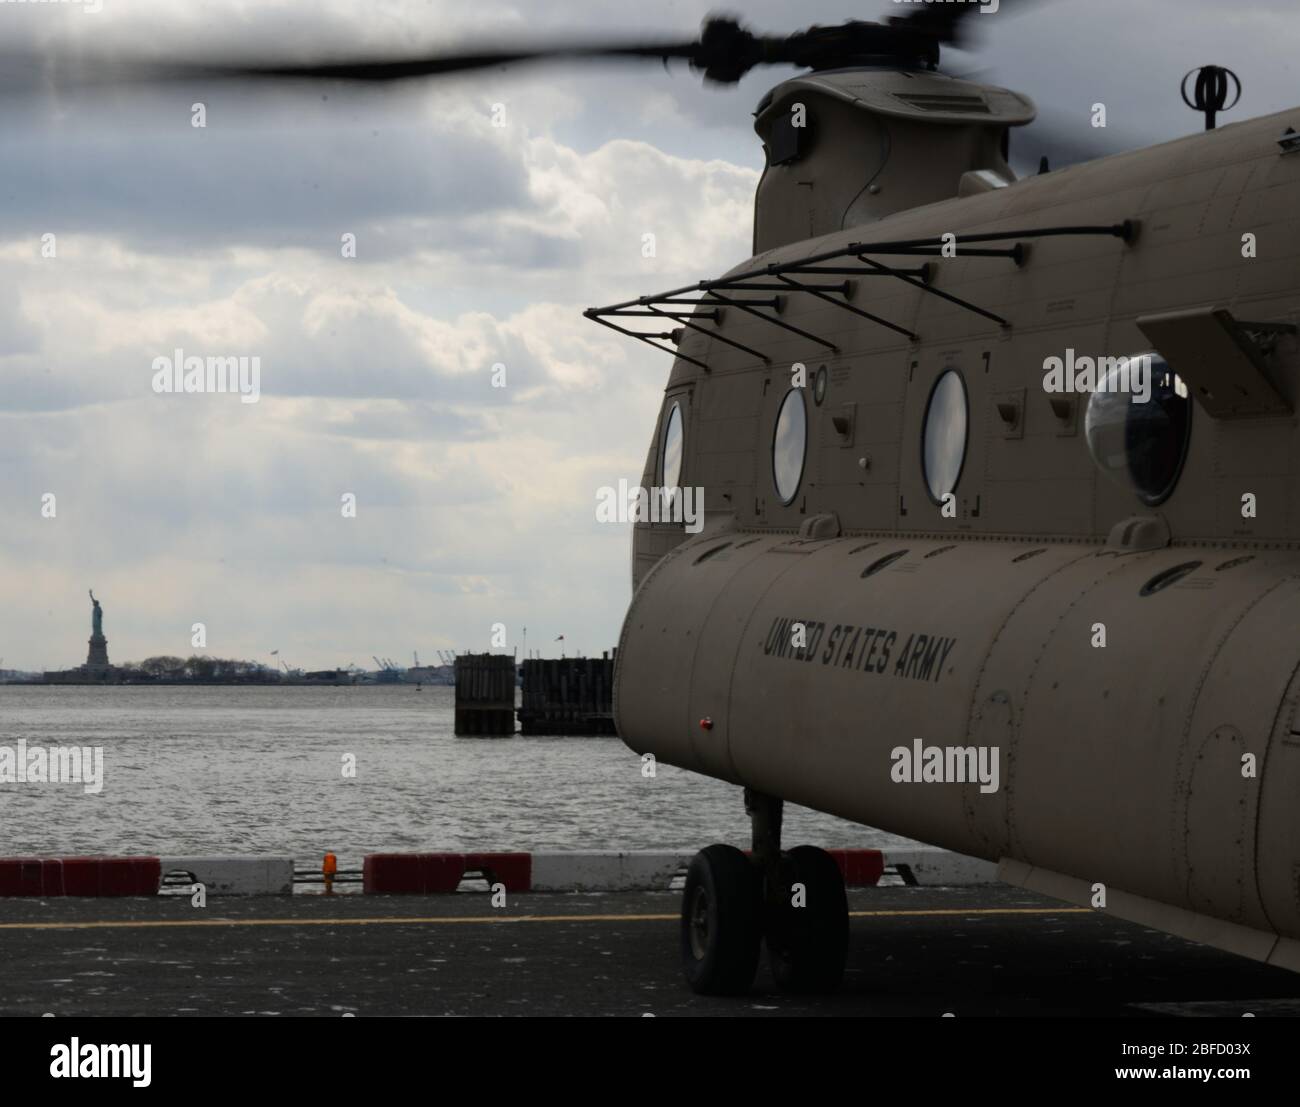 Ein Hubschrauber der CH-47 Chinook, der New York Army National Guard's Company B, 3. Bataillon, 126th Aviation, zugewiesen, nähert sich einem Hubschrauberlandeplatz in New York City, 16. April 2020. Mitglieder der New York National Guard unterstützen die Multi-Agency-Reaktion auf COVID-19. (USA Foto der Air National Guard von Senior Airman Sean Madden) Stockfoto